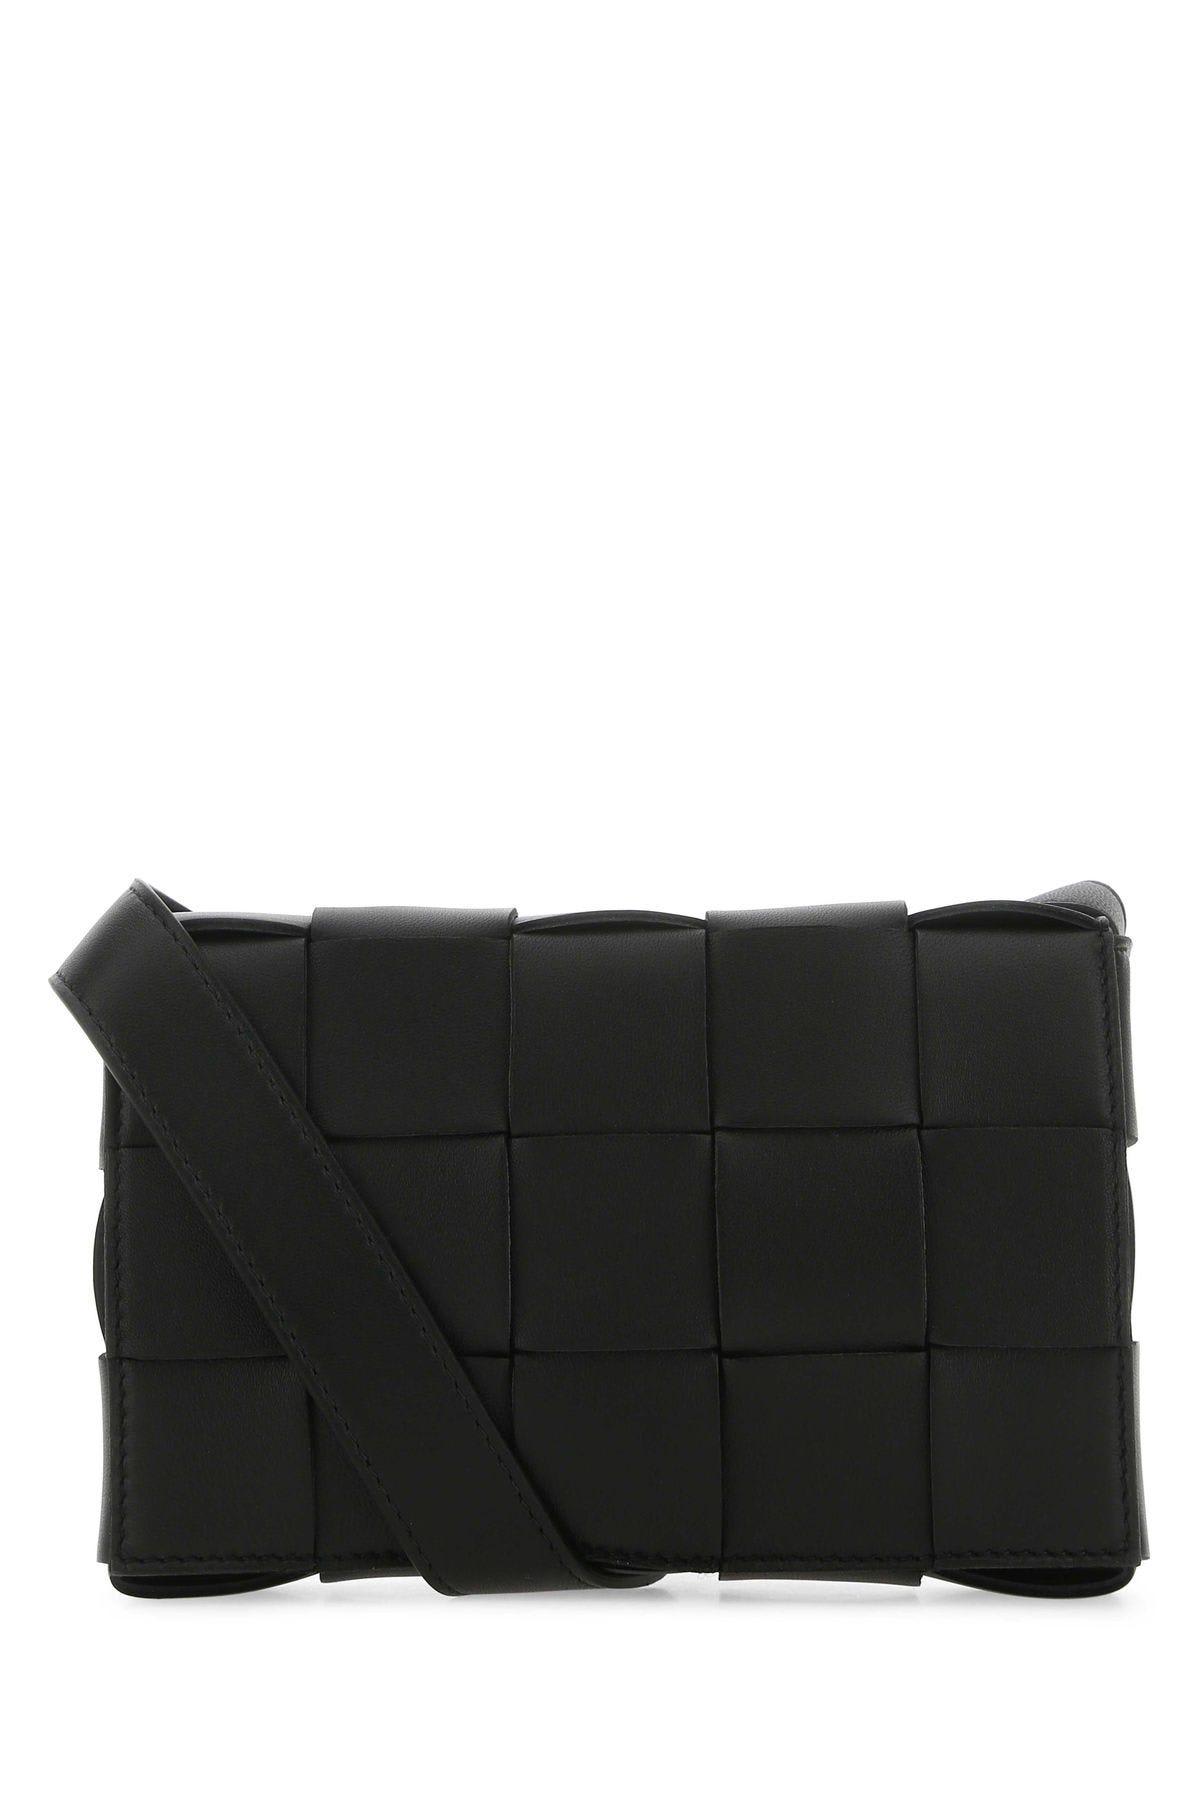 Bottega Veneta Black Leather Small Cassette Crossbody Bag